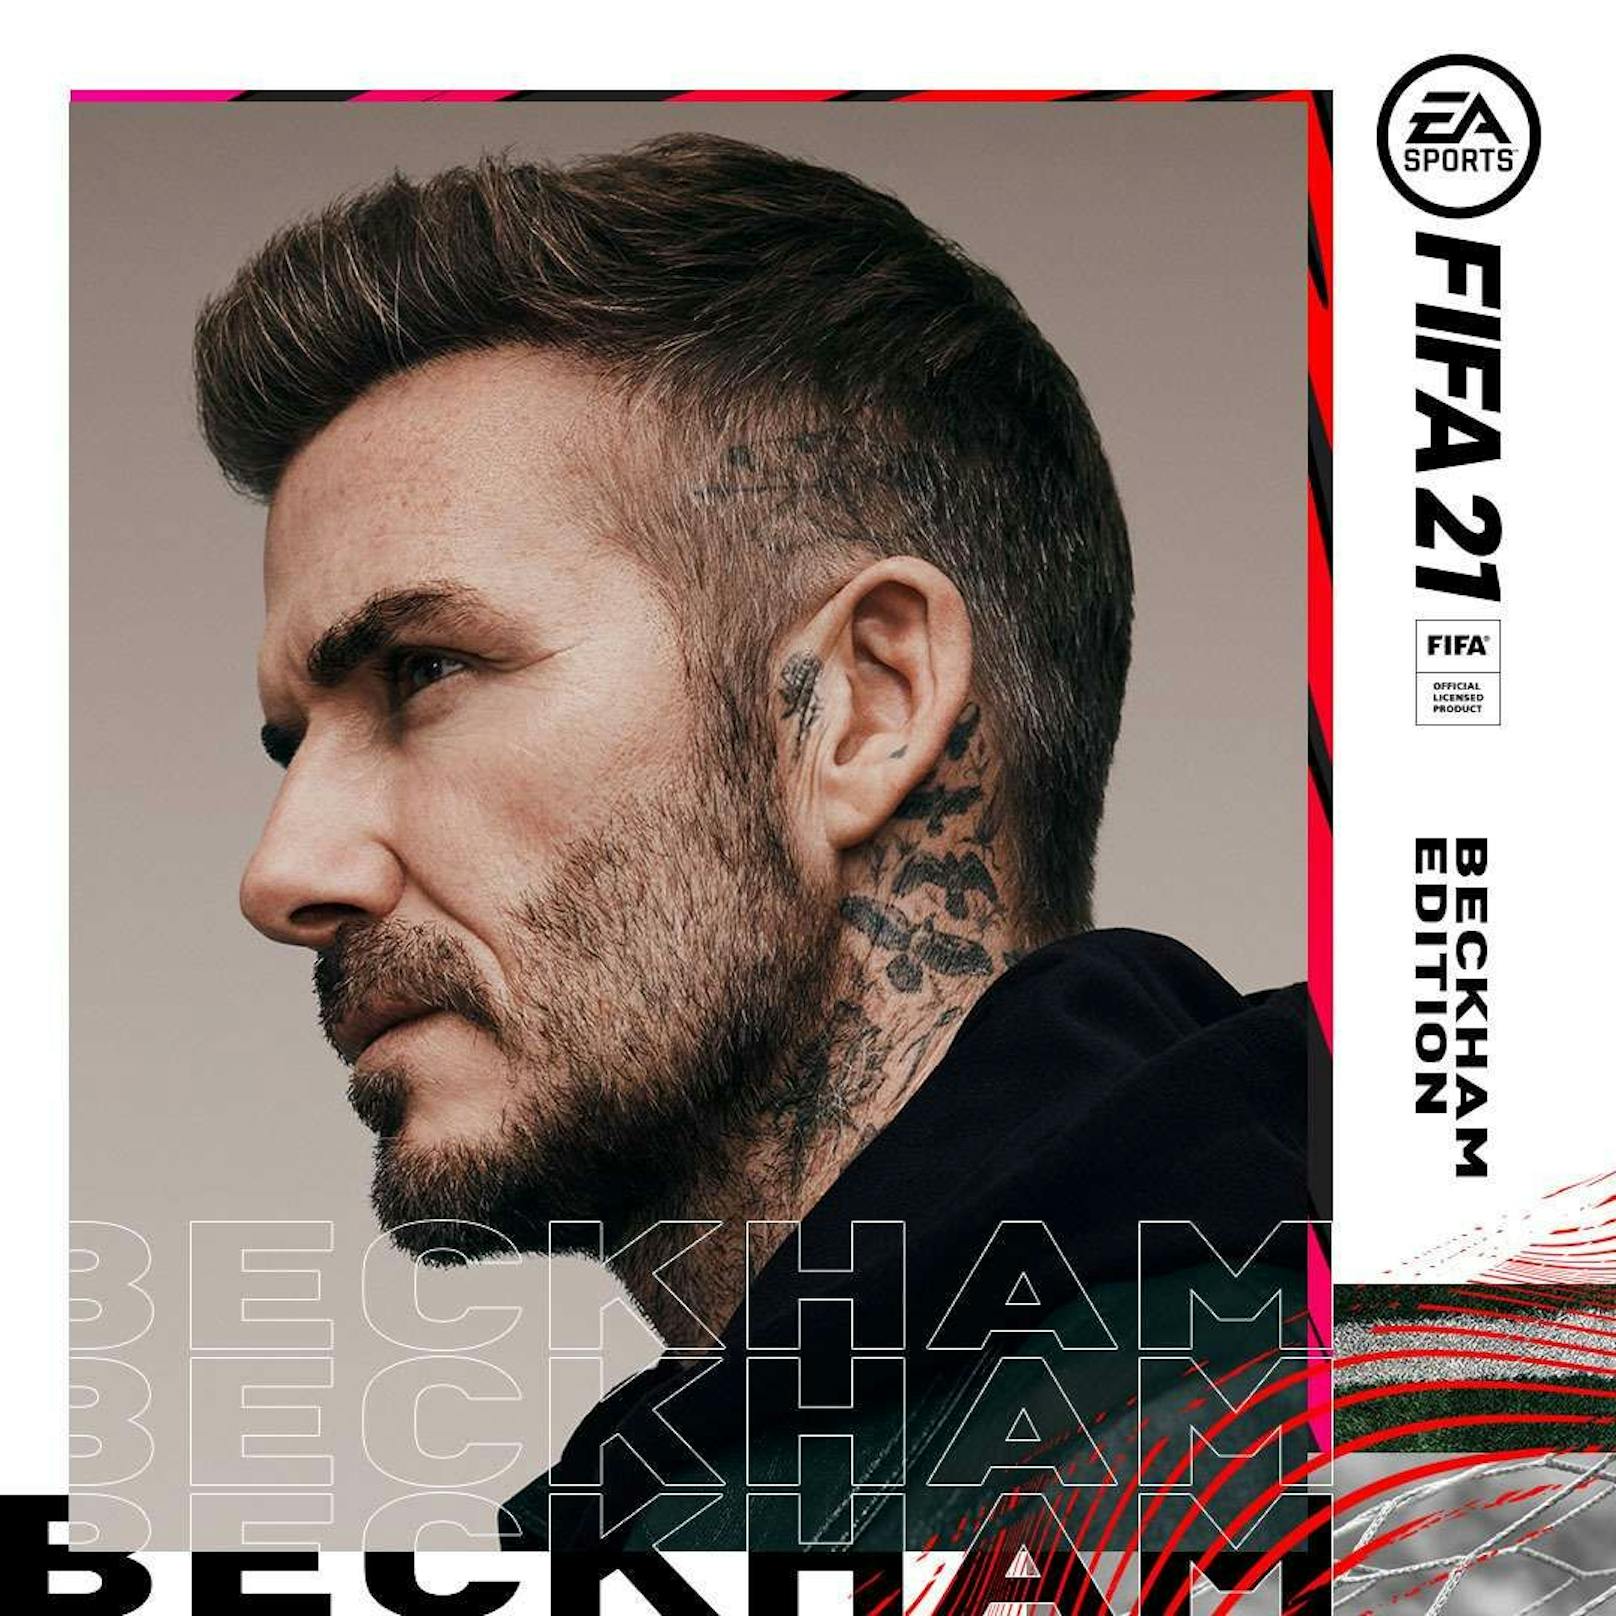 Das Cover der "Fifa 21 Standard Edition" auf PlayStation und Xbox wird in den Shops vorübergehend mit einem rein digitalen Beckham Edition-Cover upgedatet. 